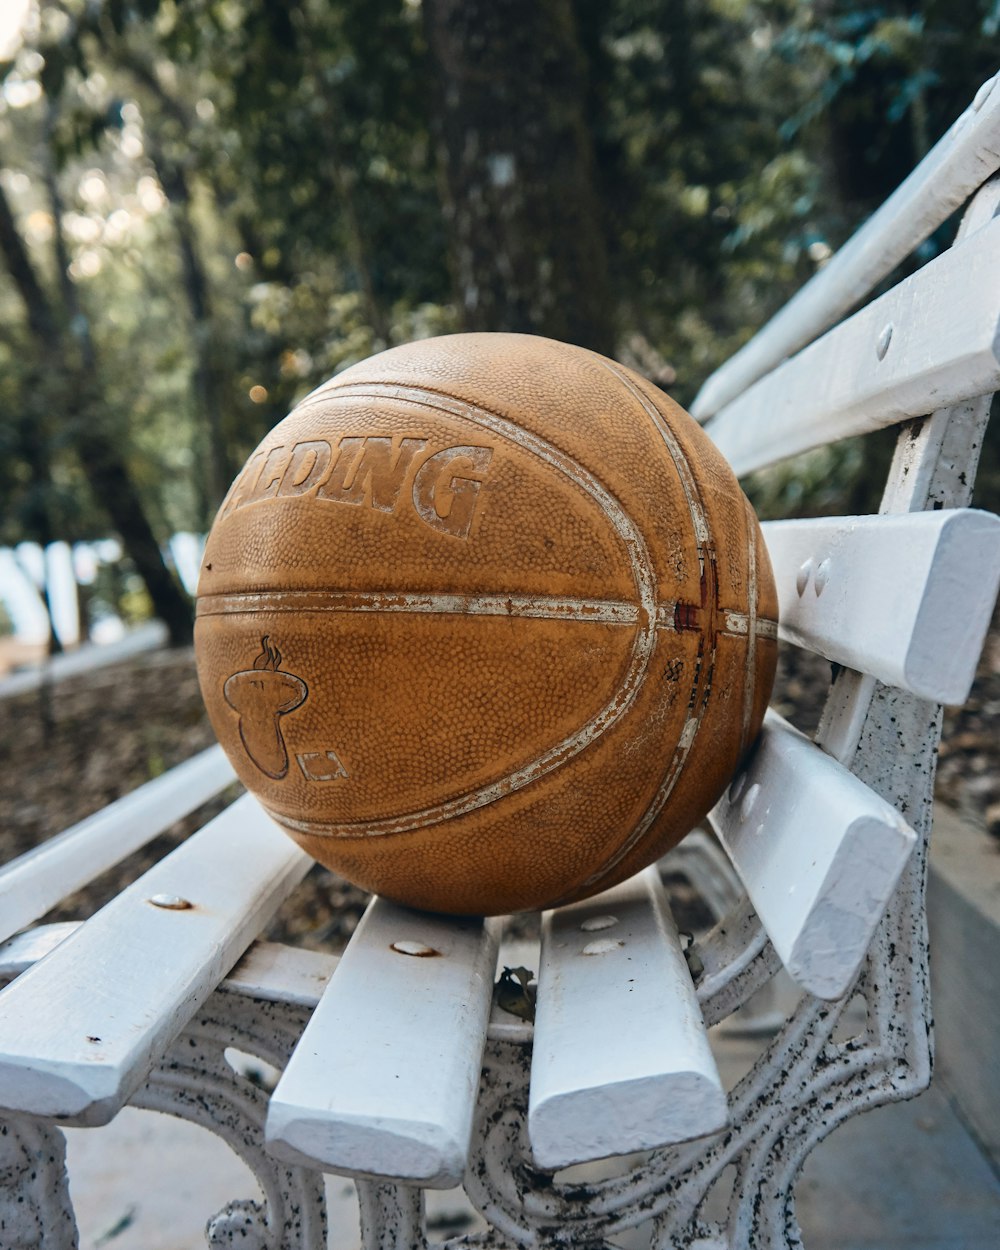 Spalding Basketball auf der Bank